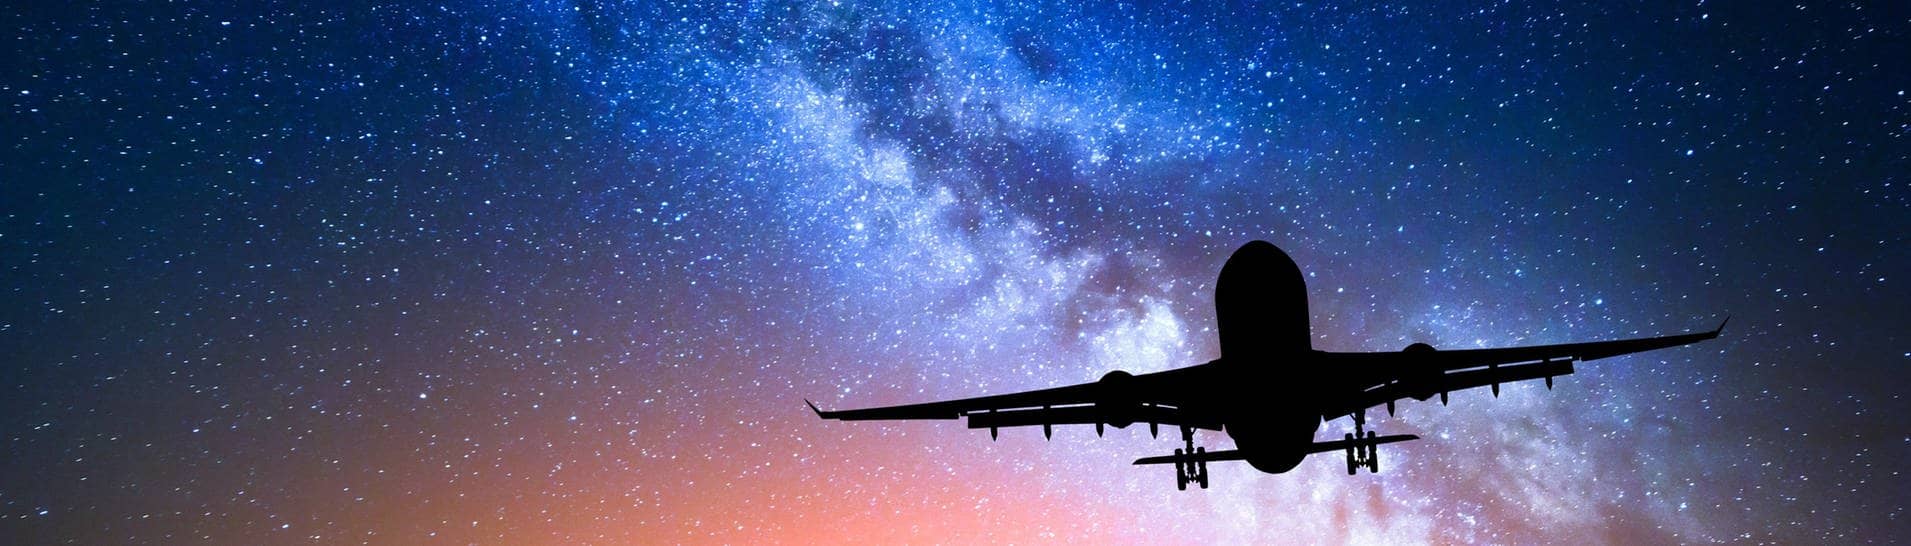 Flugzeug vor dem Sternenhimmel (Foto: Adobe Stock/den-belitsky)